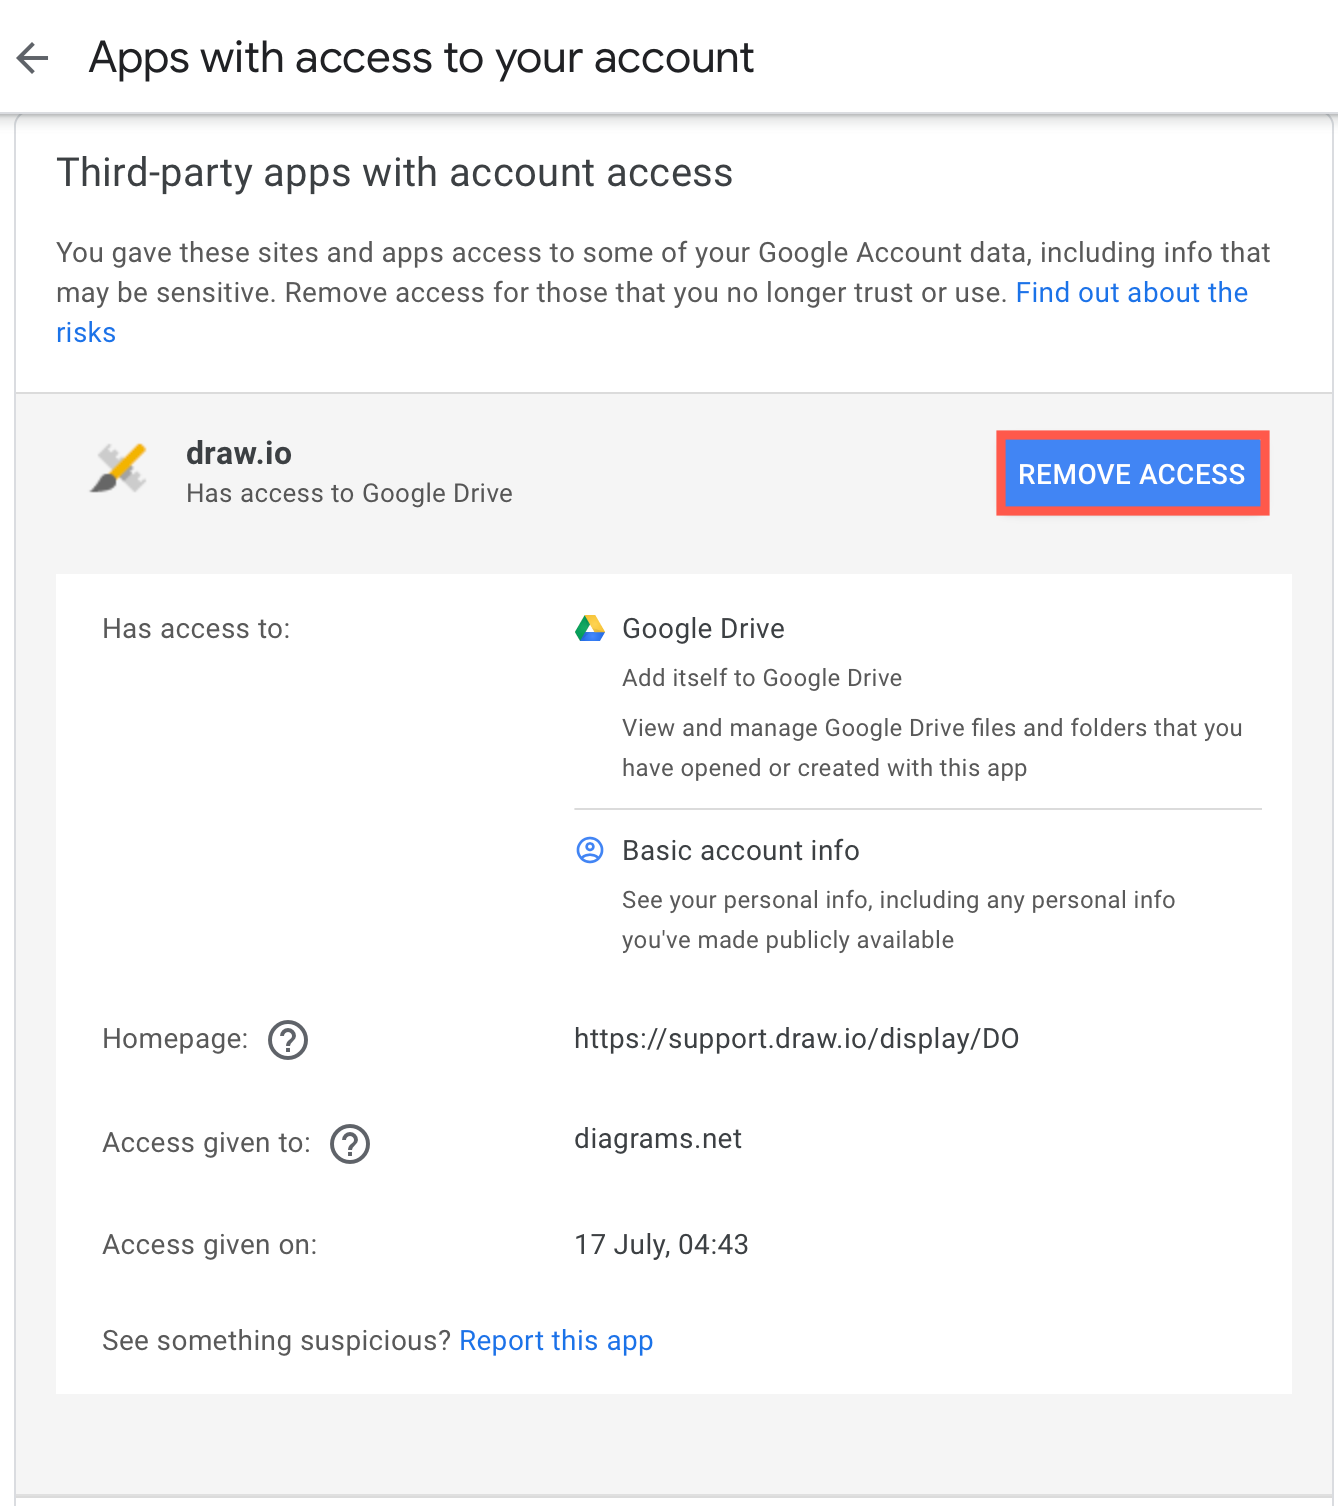 Revoke permissions access for draw.io to Google Drive